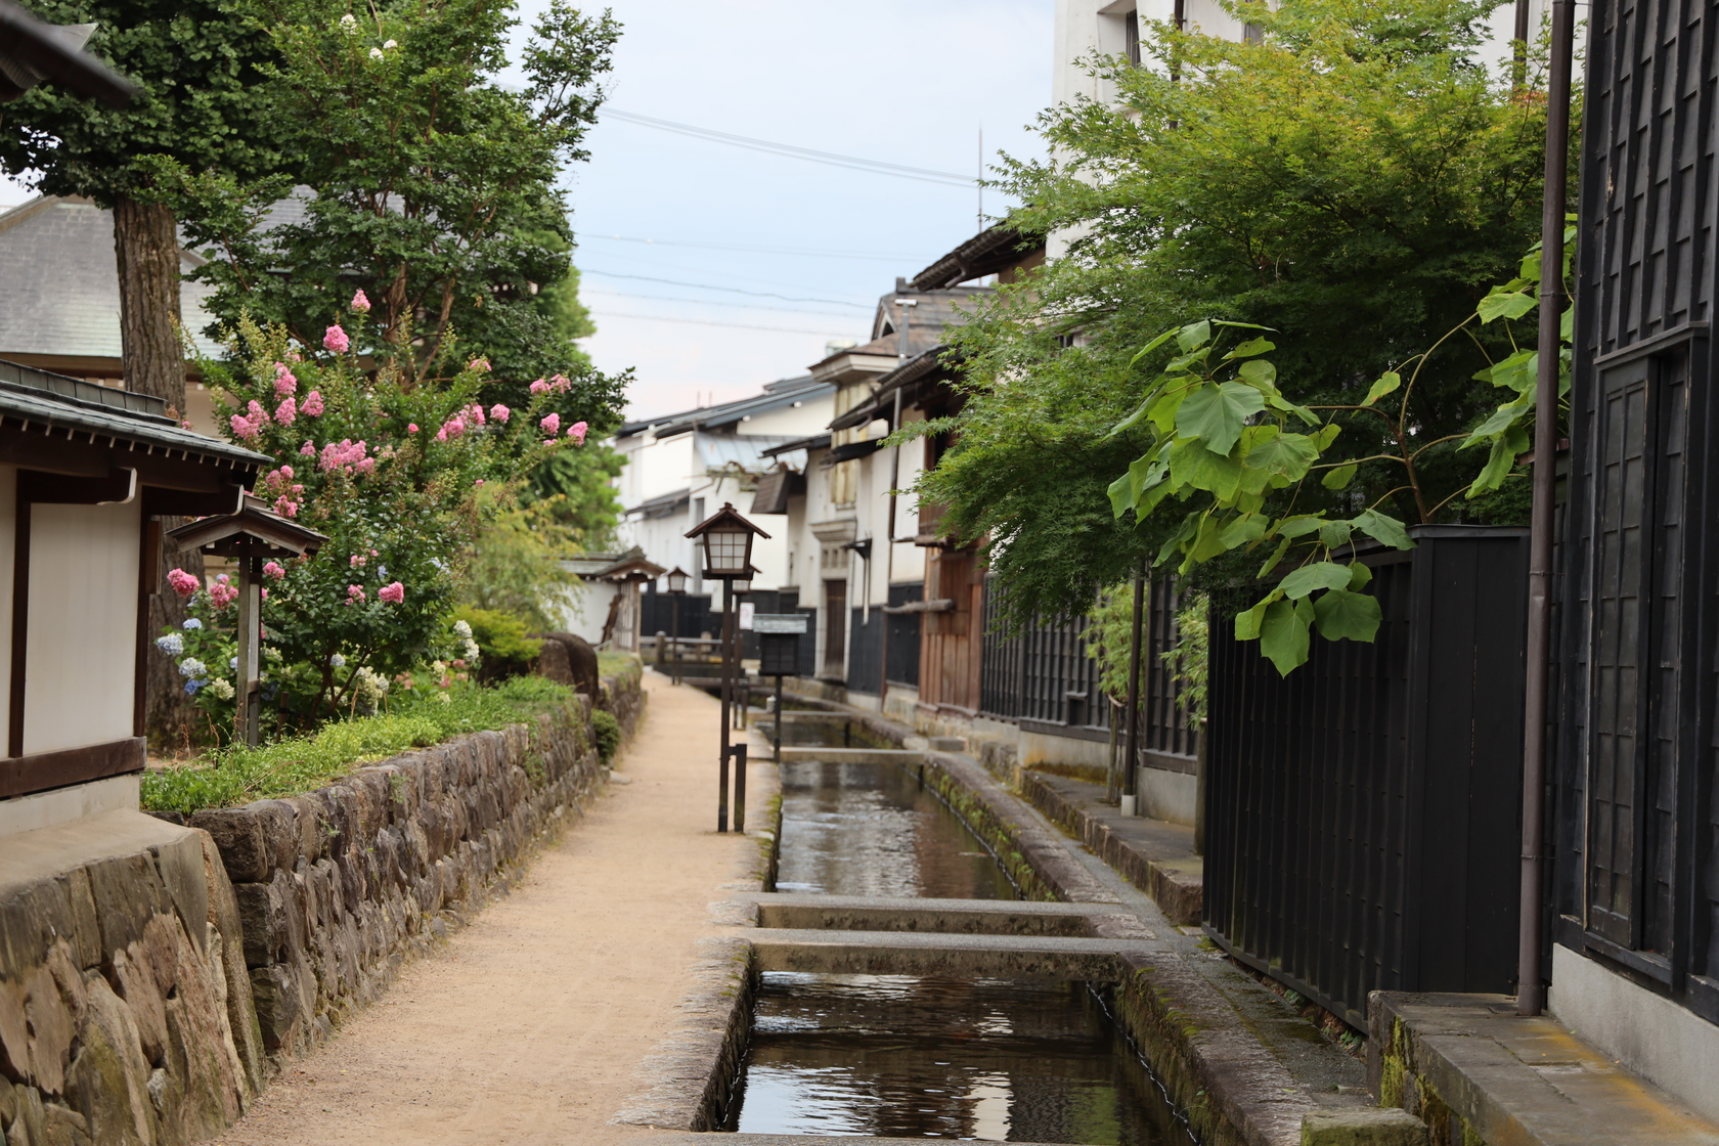 Yukata experience and Shirakabe Dozogai Street